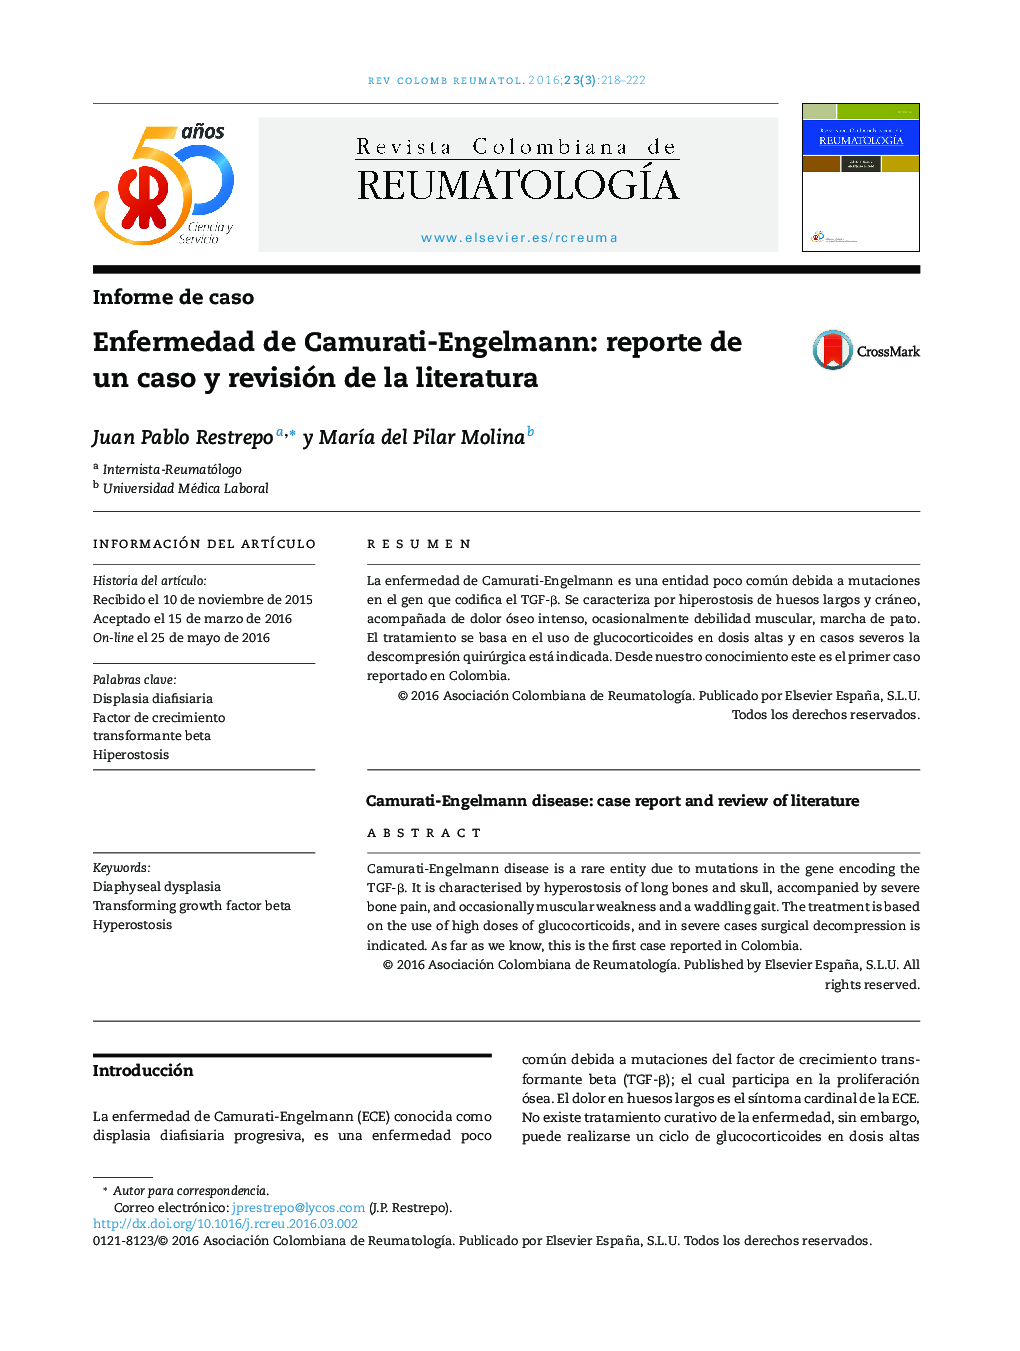 Enfermedad de Camurati-Engelmann: reporte de un caso y revisión de la literatura